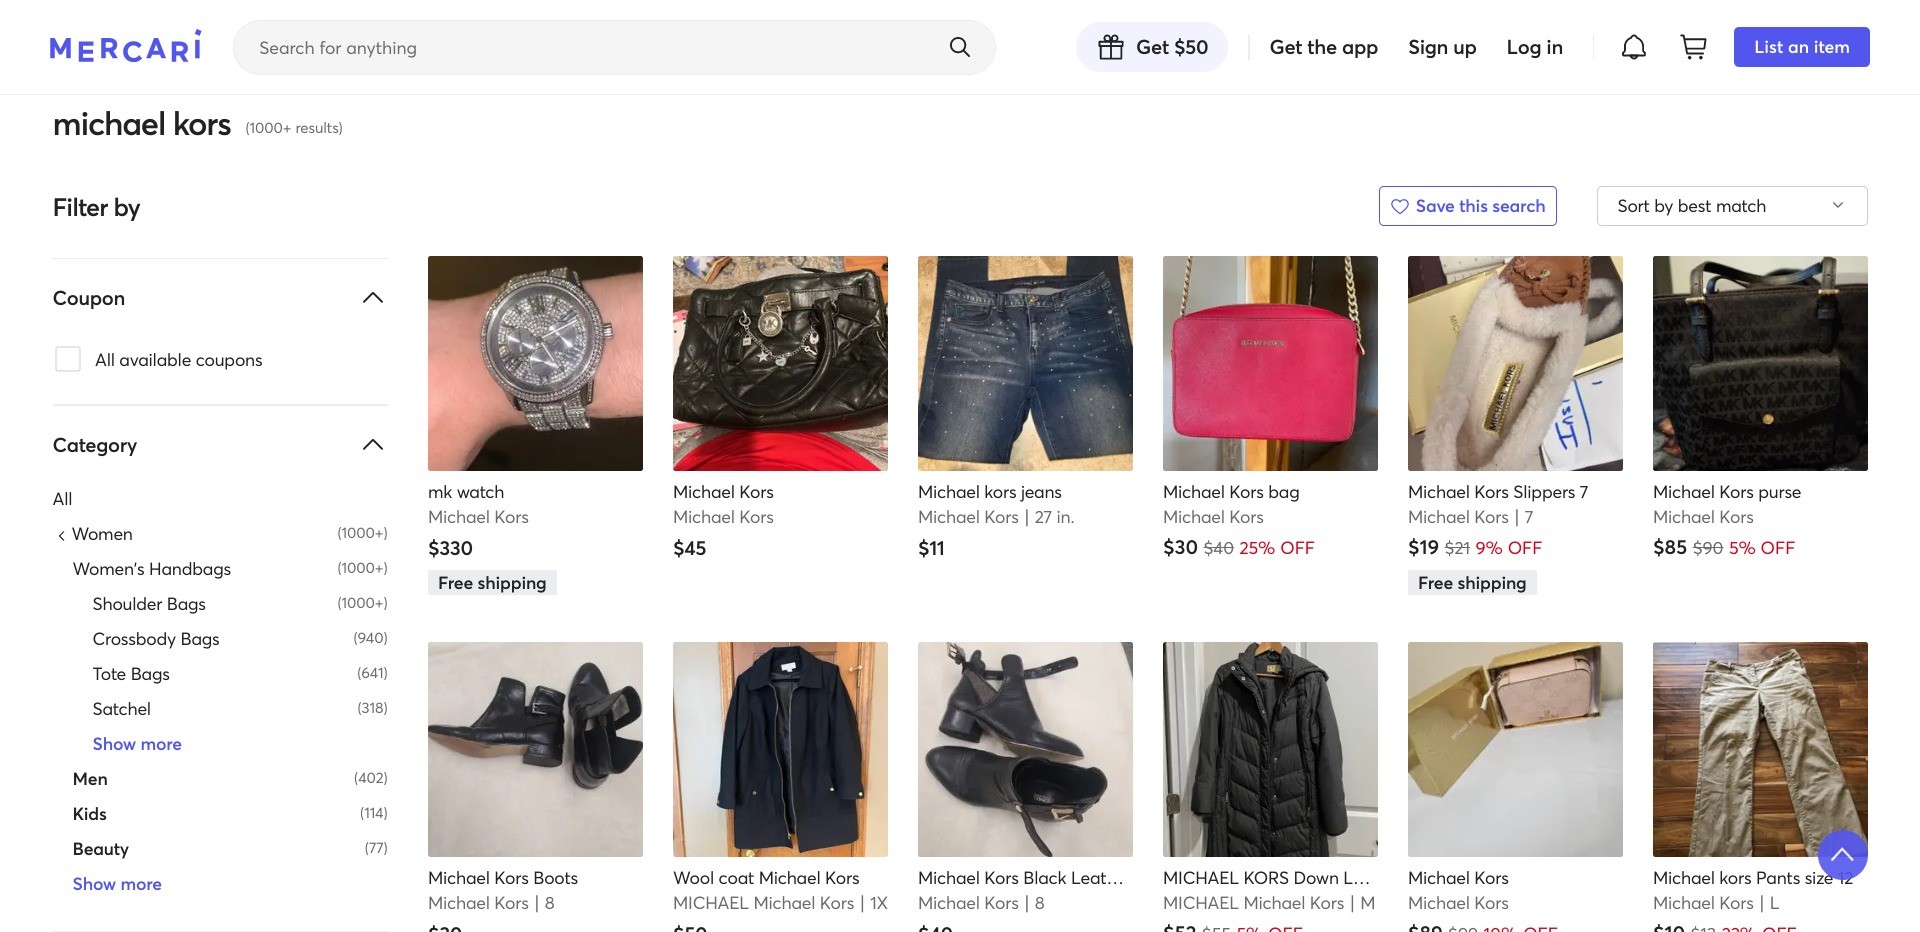 Screenshot of mercari.com displaying random Michael Kors product listings